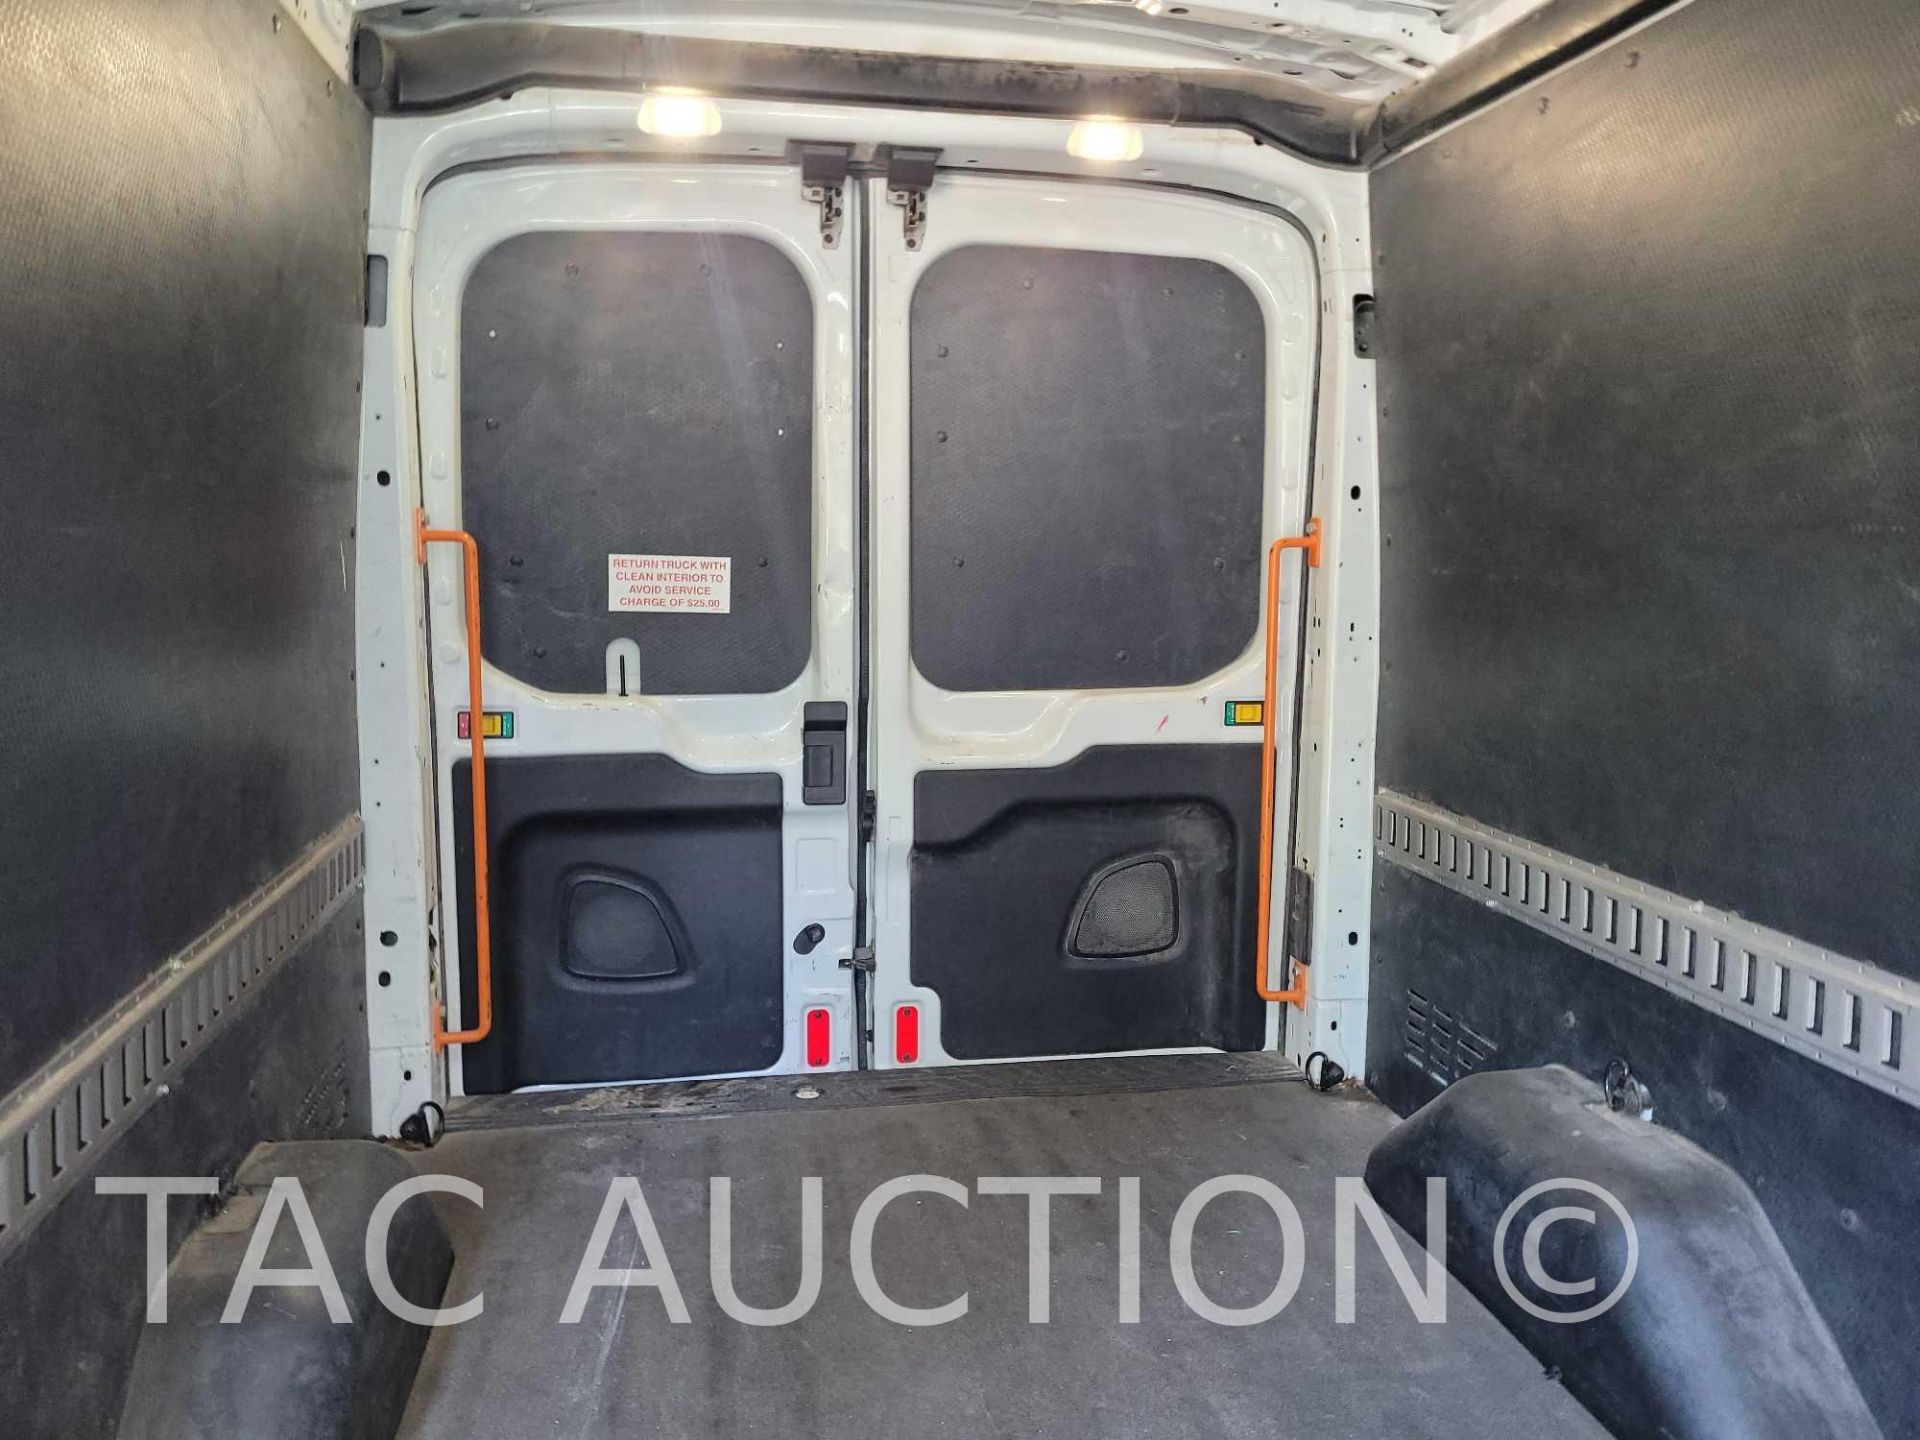 2019 Ford Transit 150 Cargo Van - Image 13 of 52